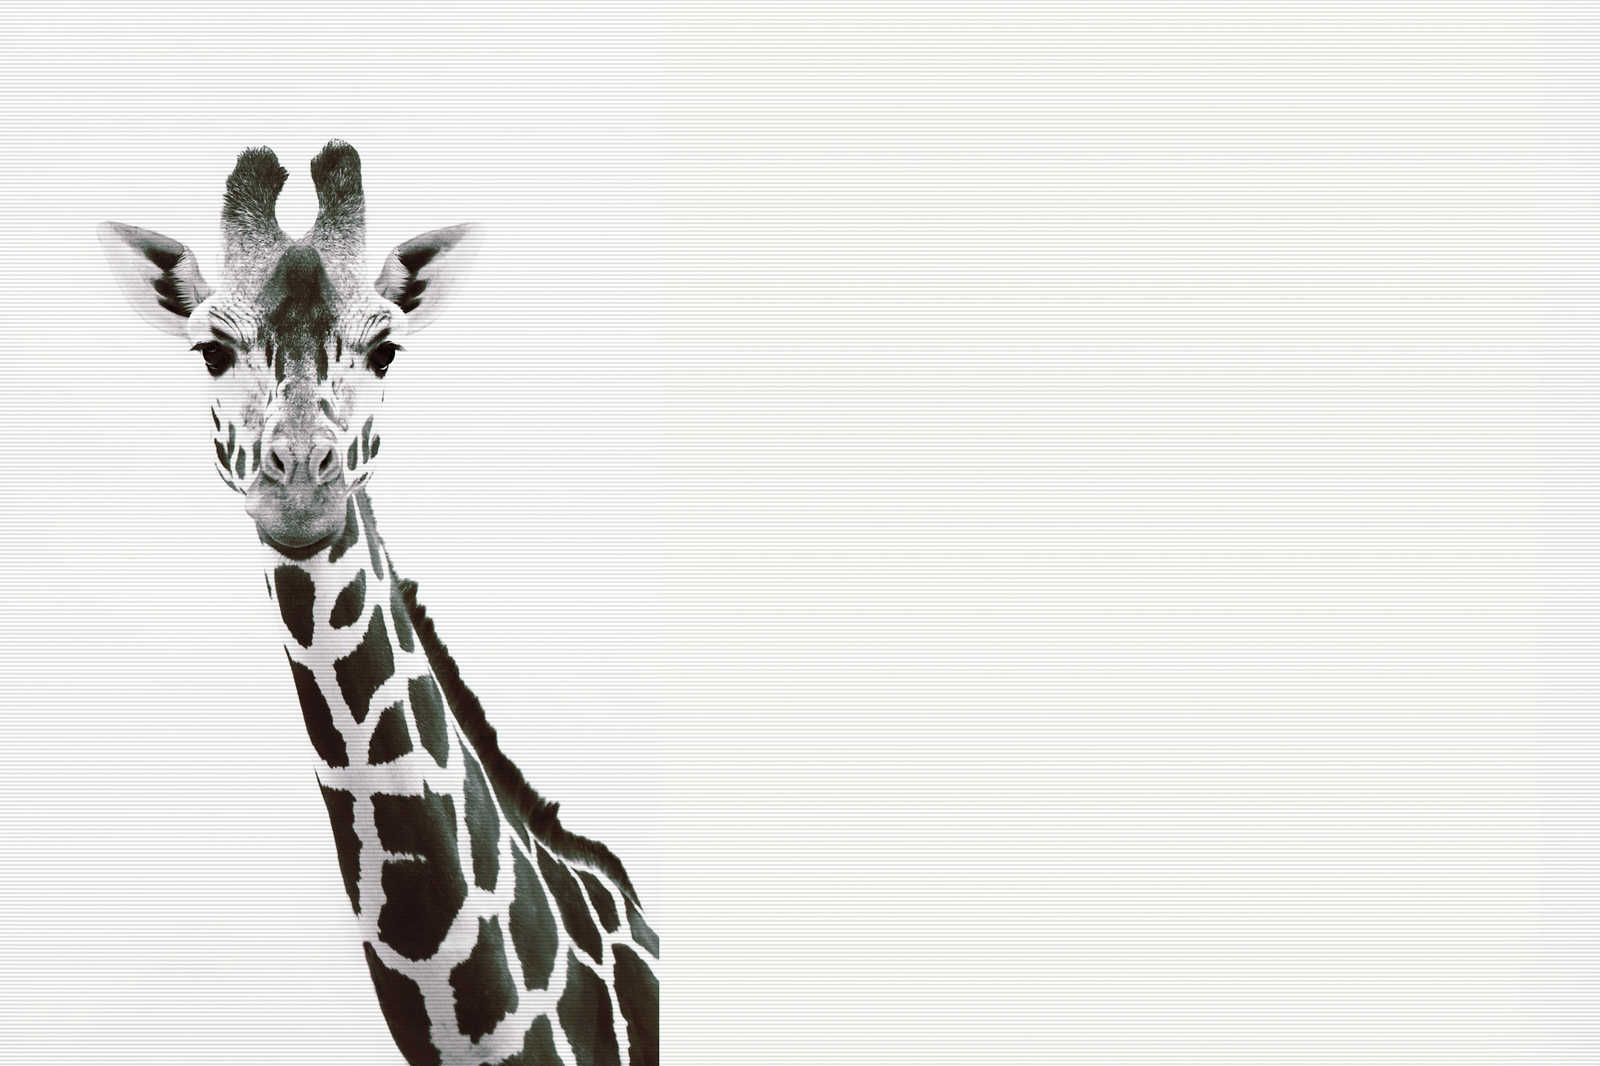             Giraffen Leinwandbild im XXL Schwarz-Weiß Design – 1,20 m x 0,80 m
        